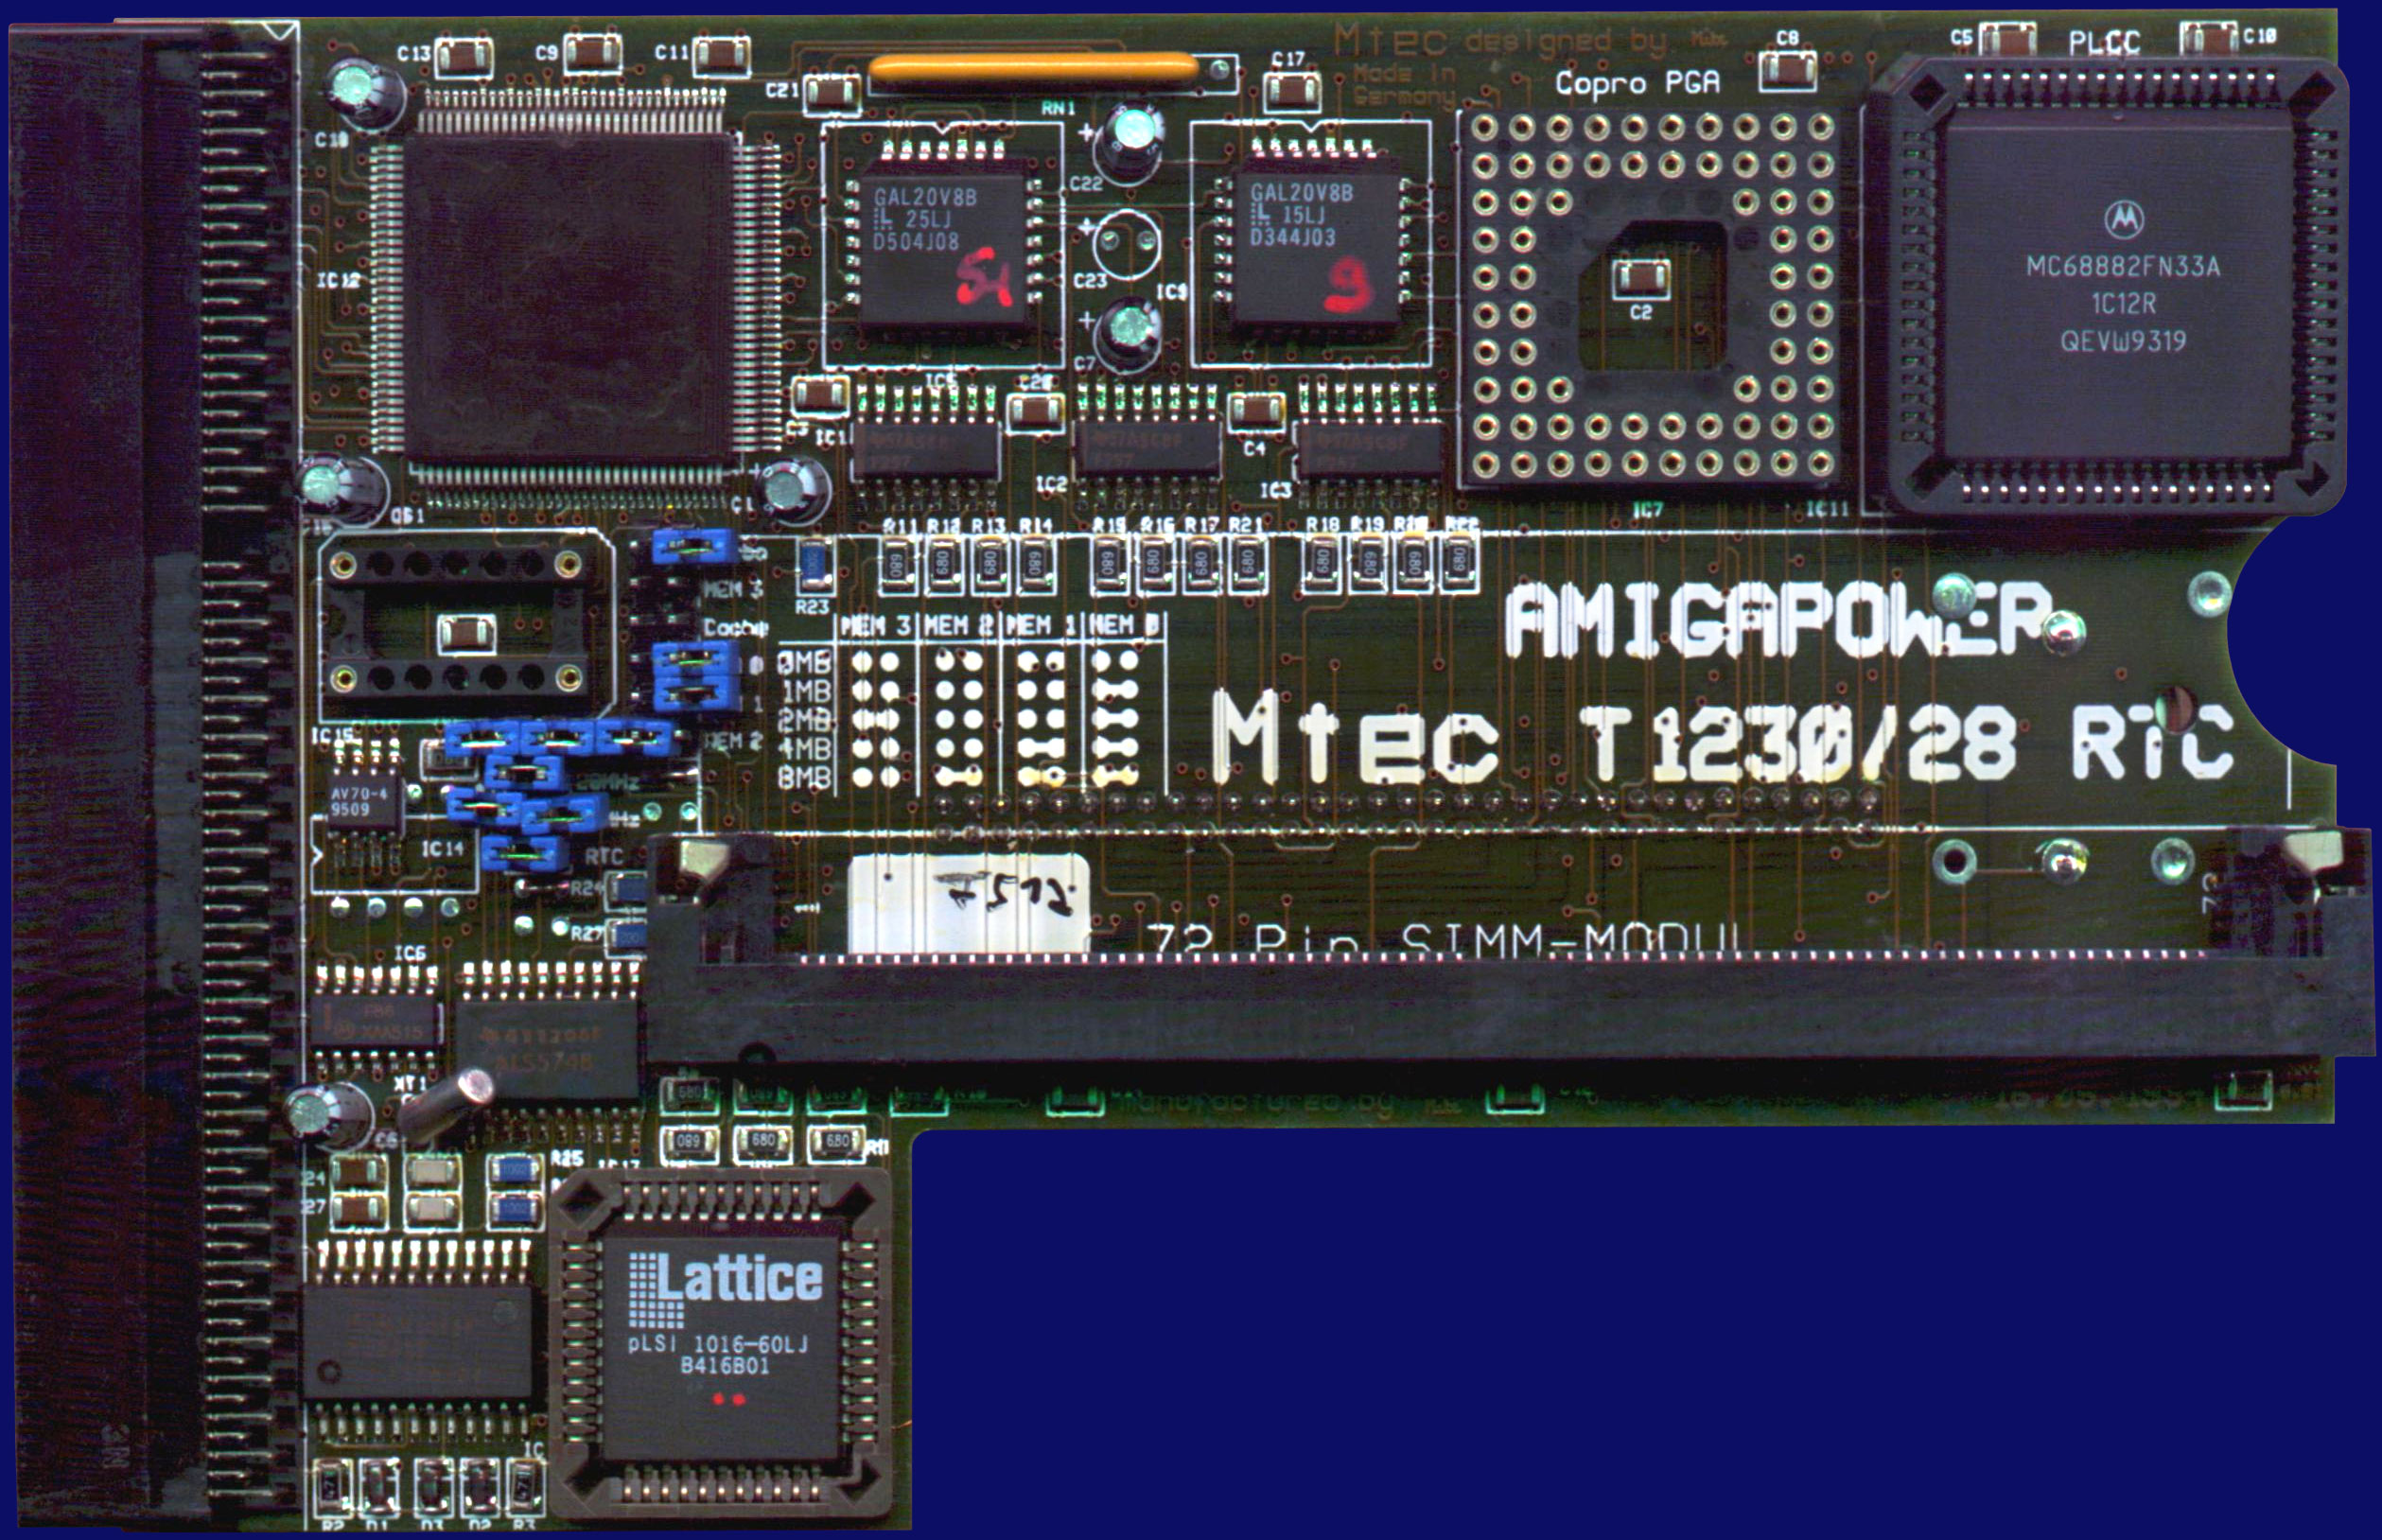 M-Tec T1230 (Viper) - T1230, front side